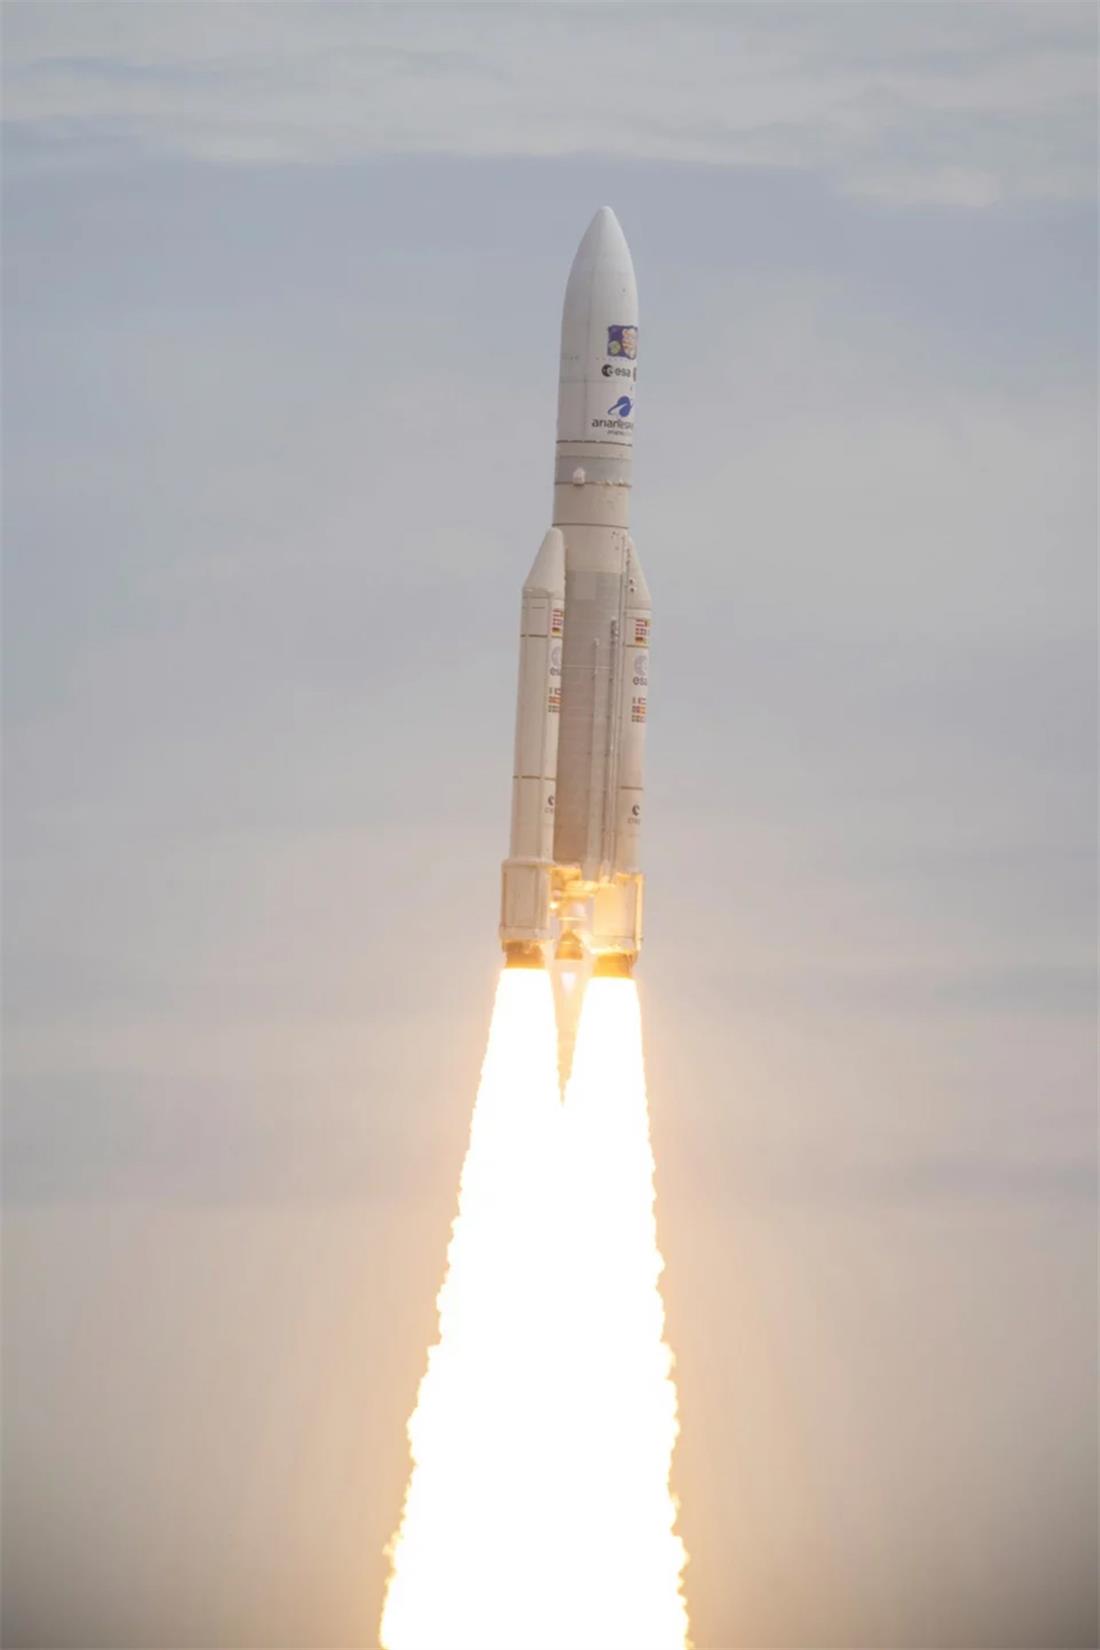 εκτόξευση - αποστολή - JUICE - Ευρωπαϊκος Οργανισμος Διαστήματος - ESA